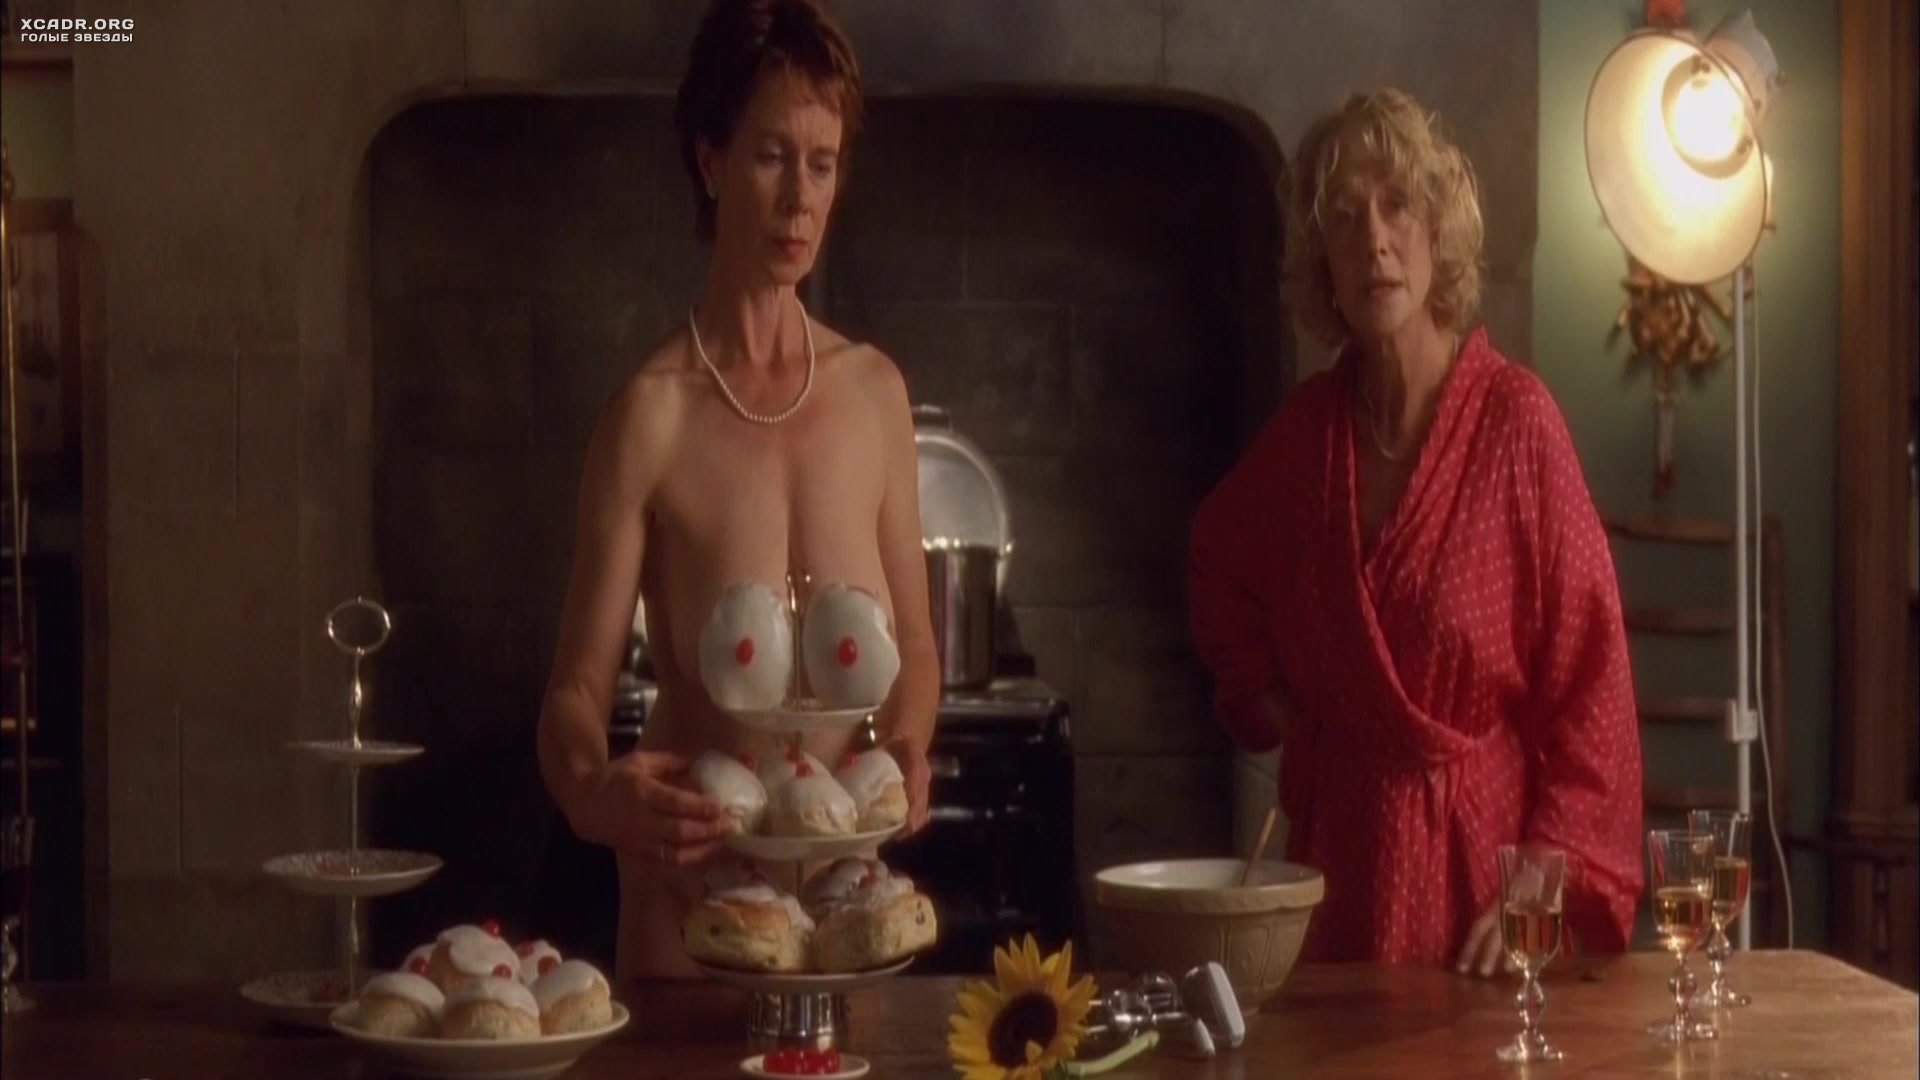 Julie t. wallace nude - 🧡 Free Deirdre Nelson Nude Fappeningram.